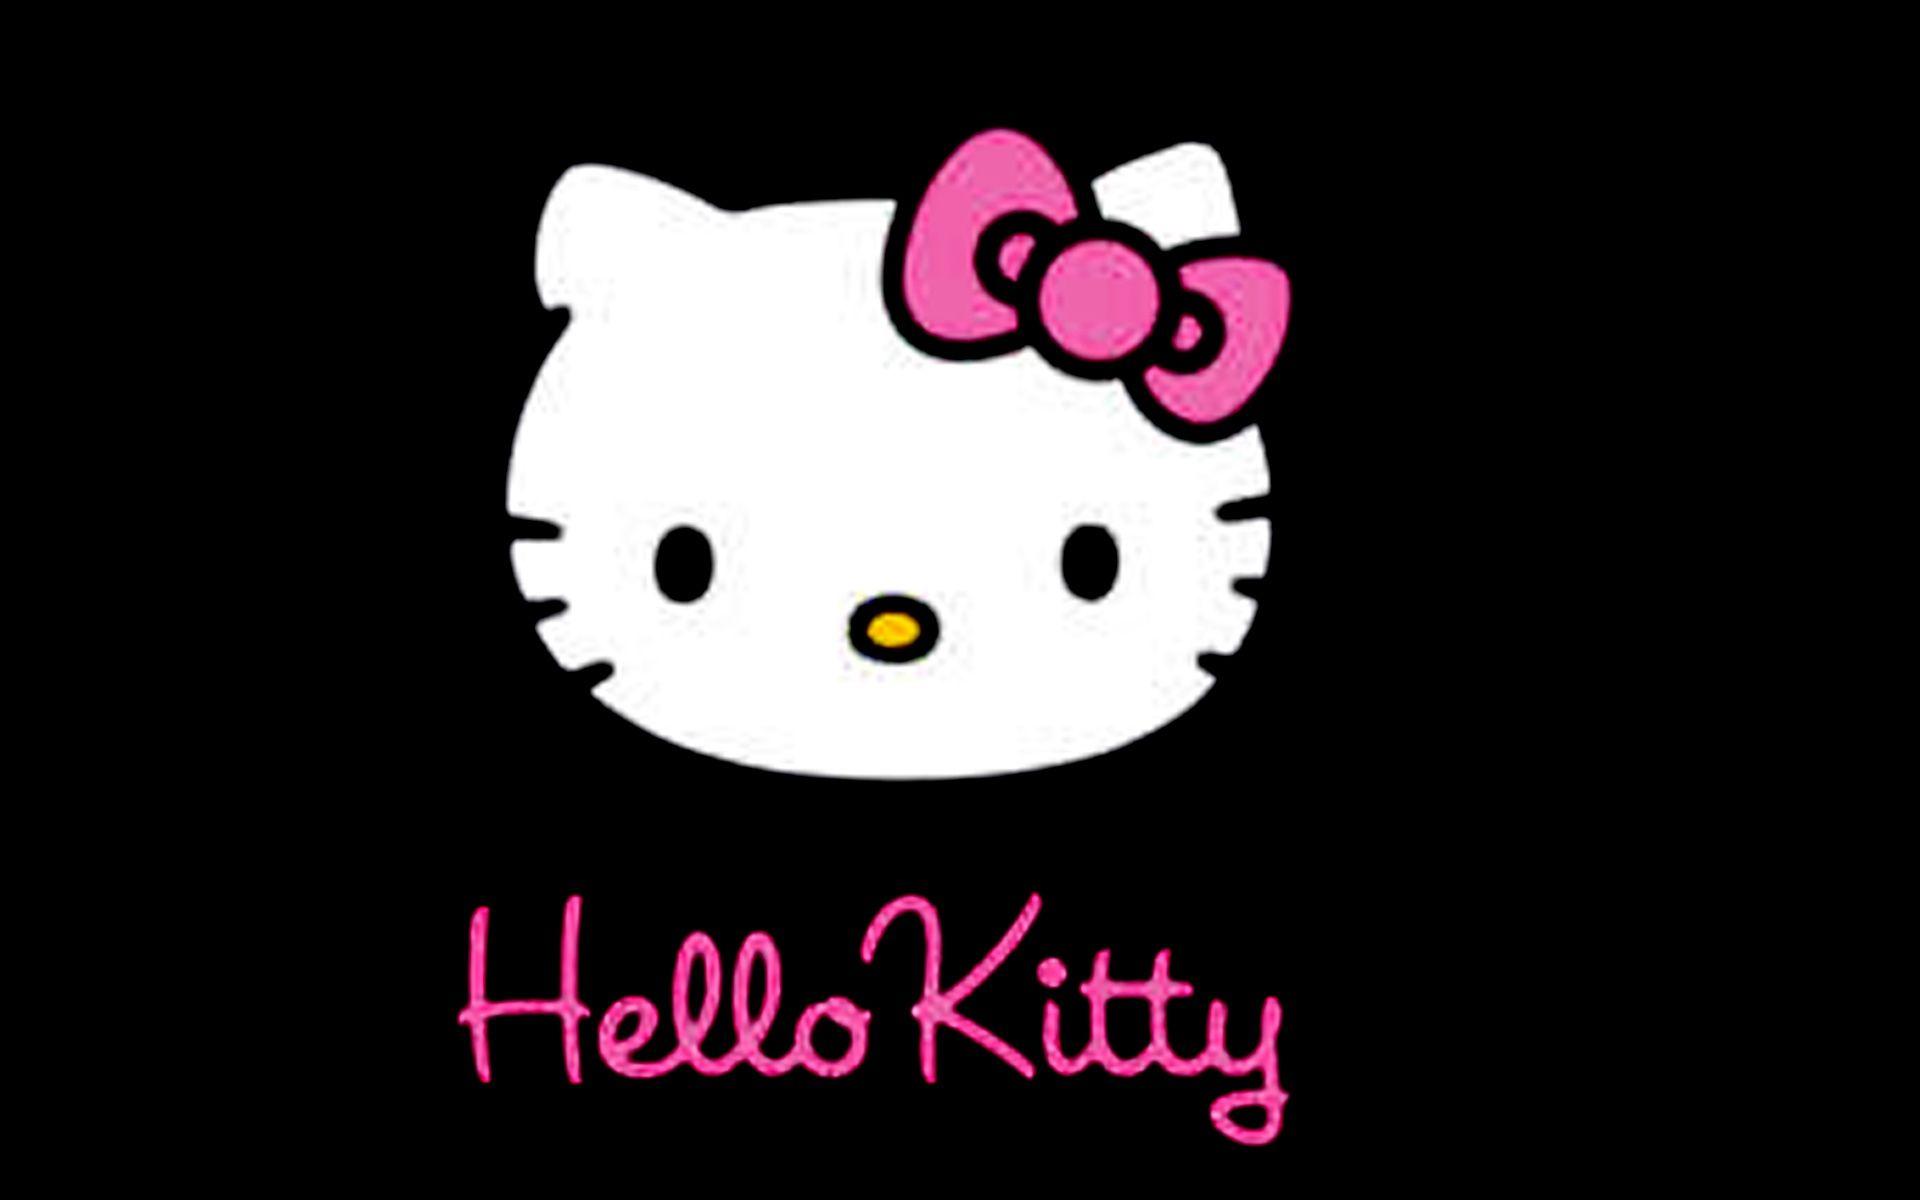 Hello Kitty Halloween Wallpaper: Free Hello Kitty Halloween